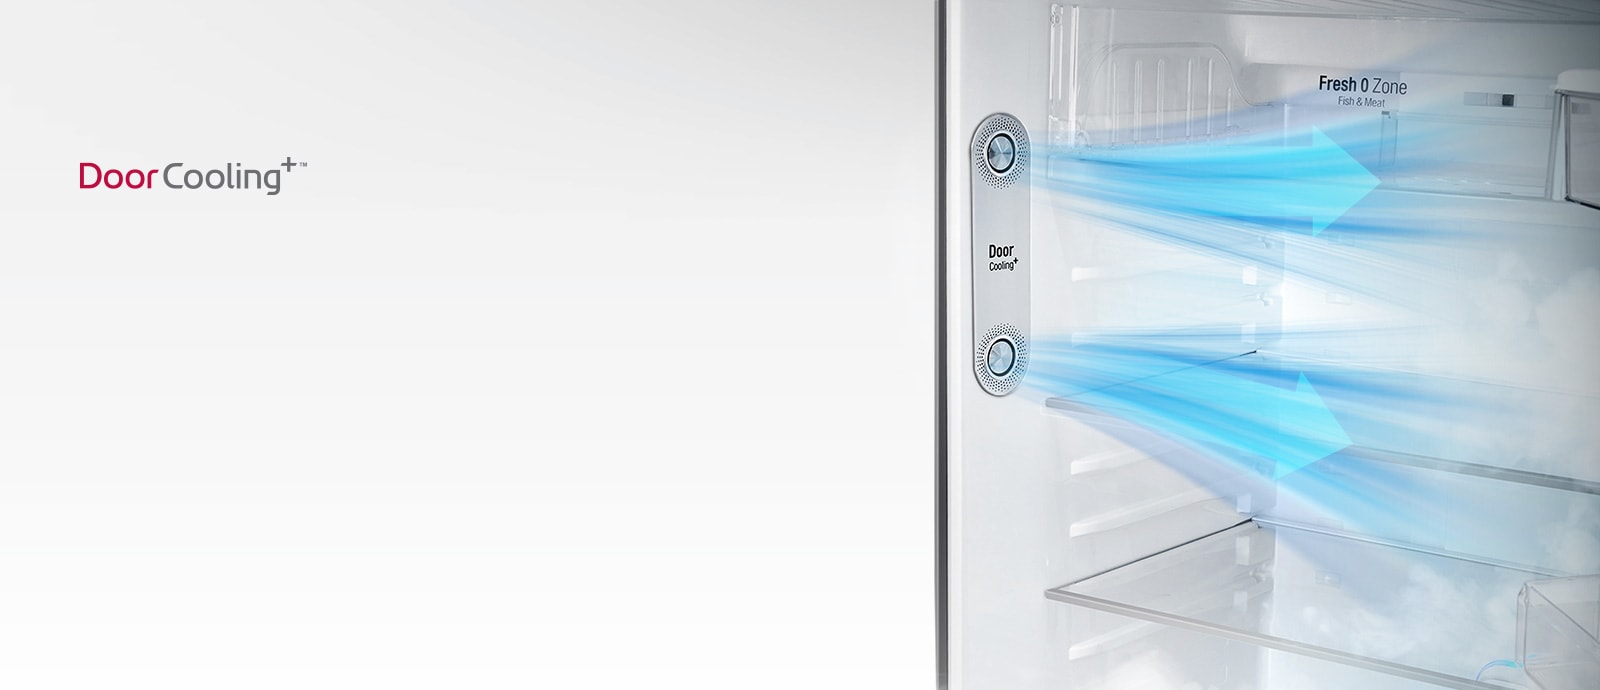 GL-B502BS_All_Refrigerators_Even_D